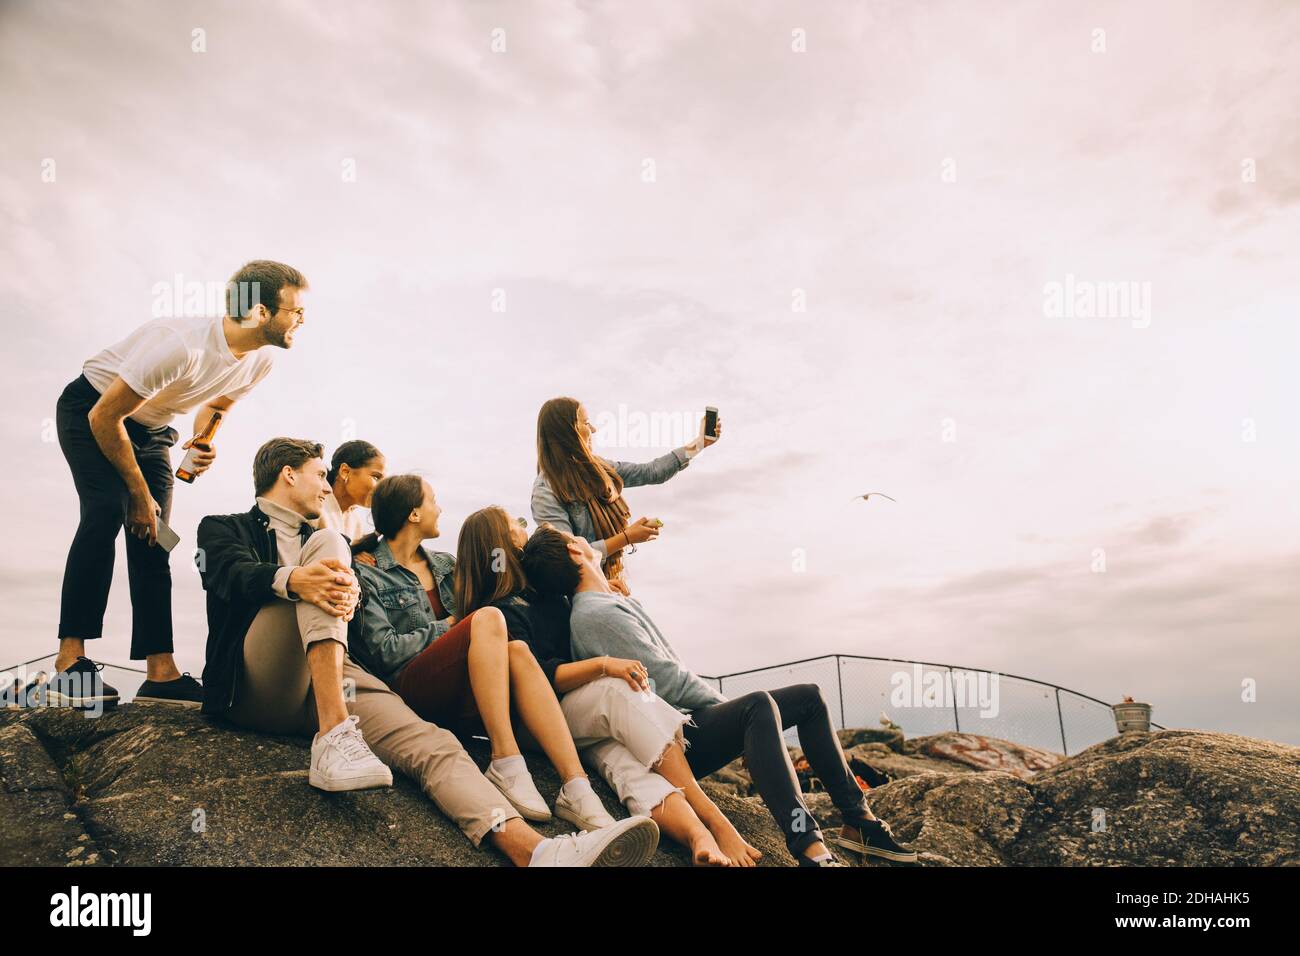 Mujer tomando selfie con amigos en formación de roca contra el cielo en picnic Foto de stock